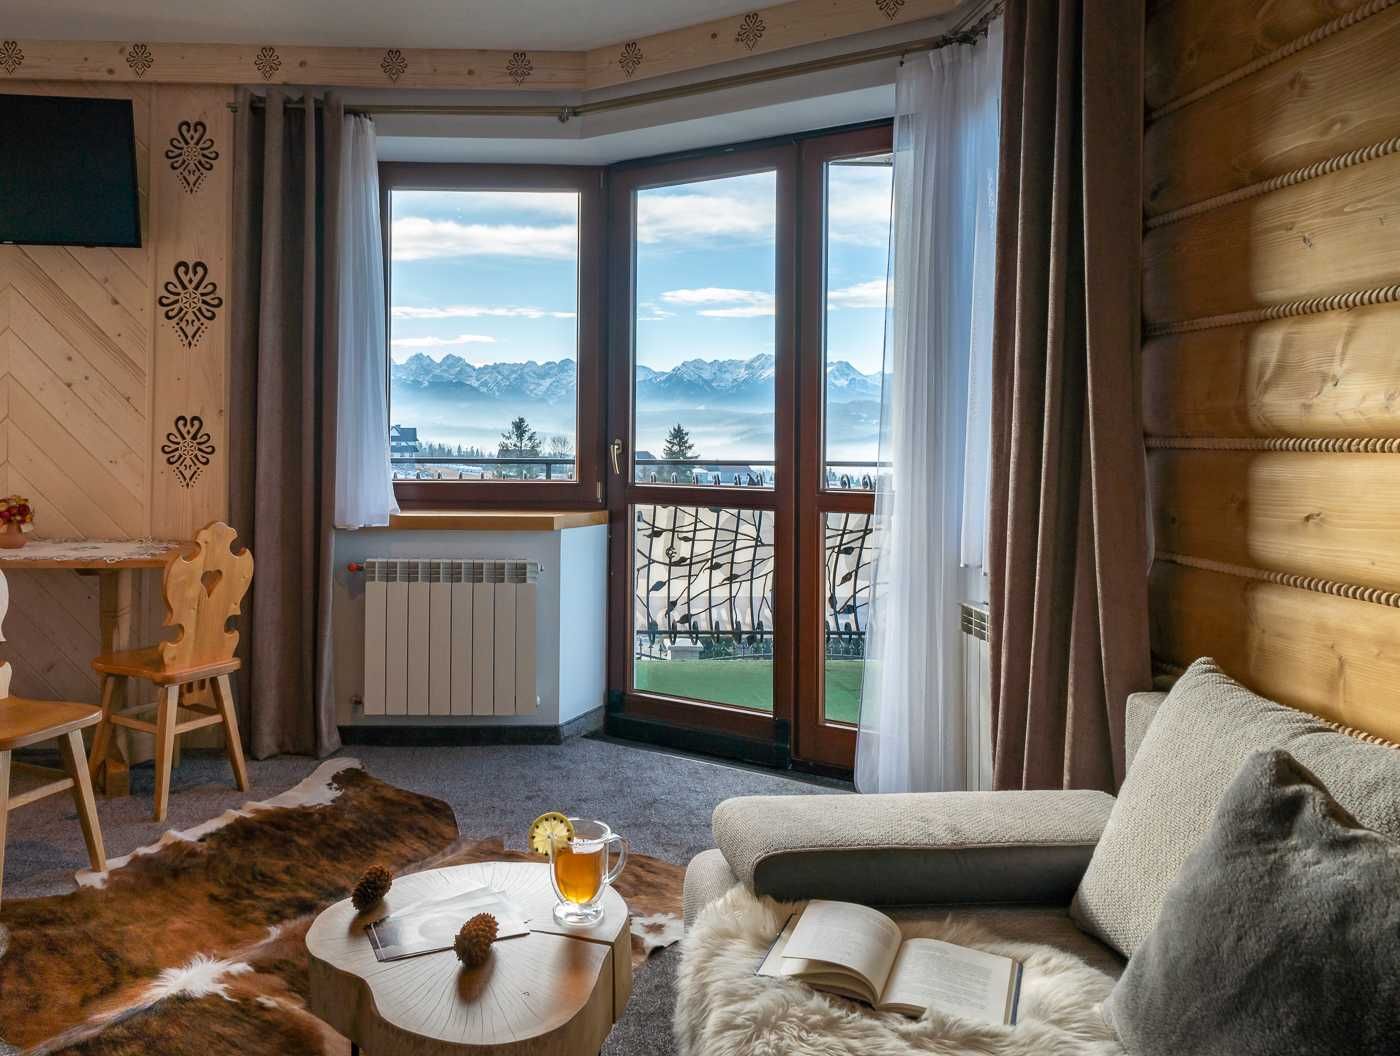 Noclegi w górach, pokoje w Tatrach, apartamenty atrakcje dla dzieci